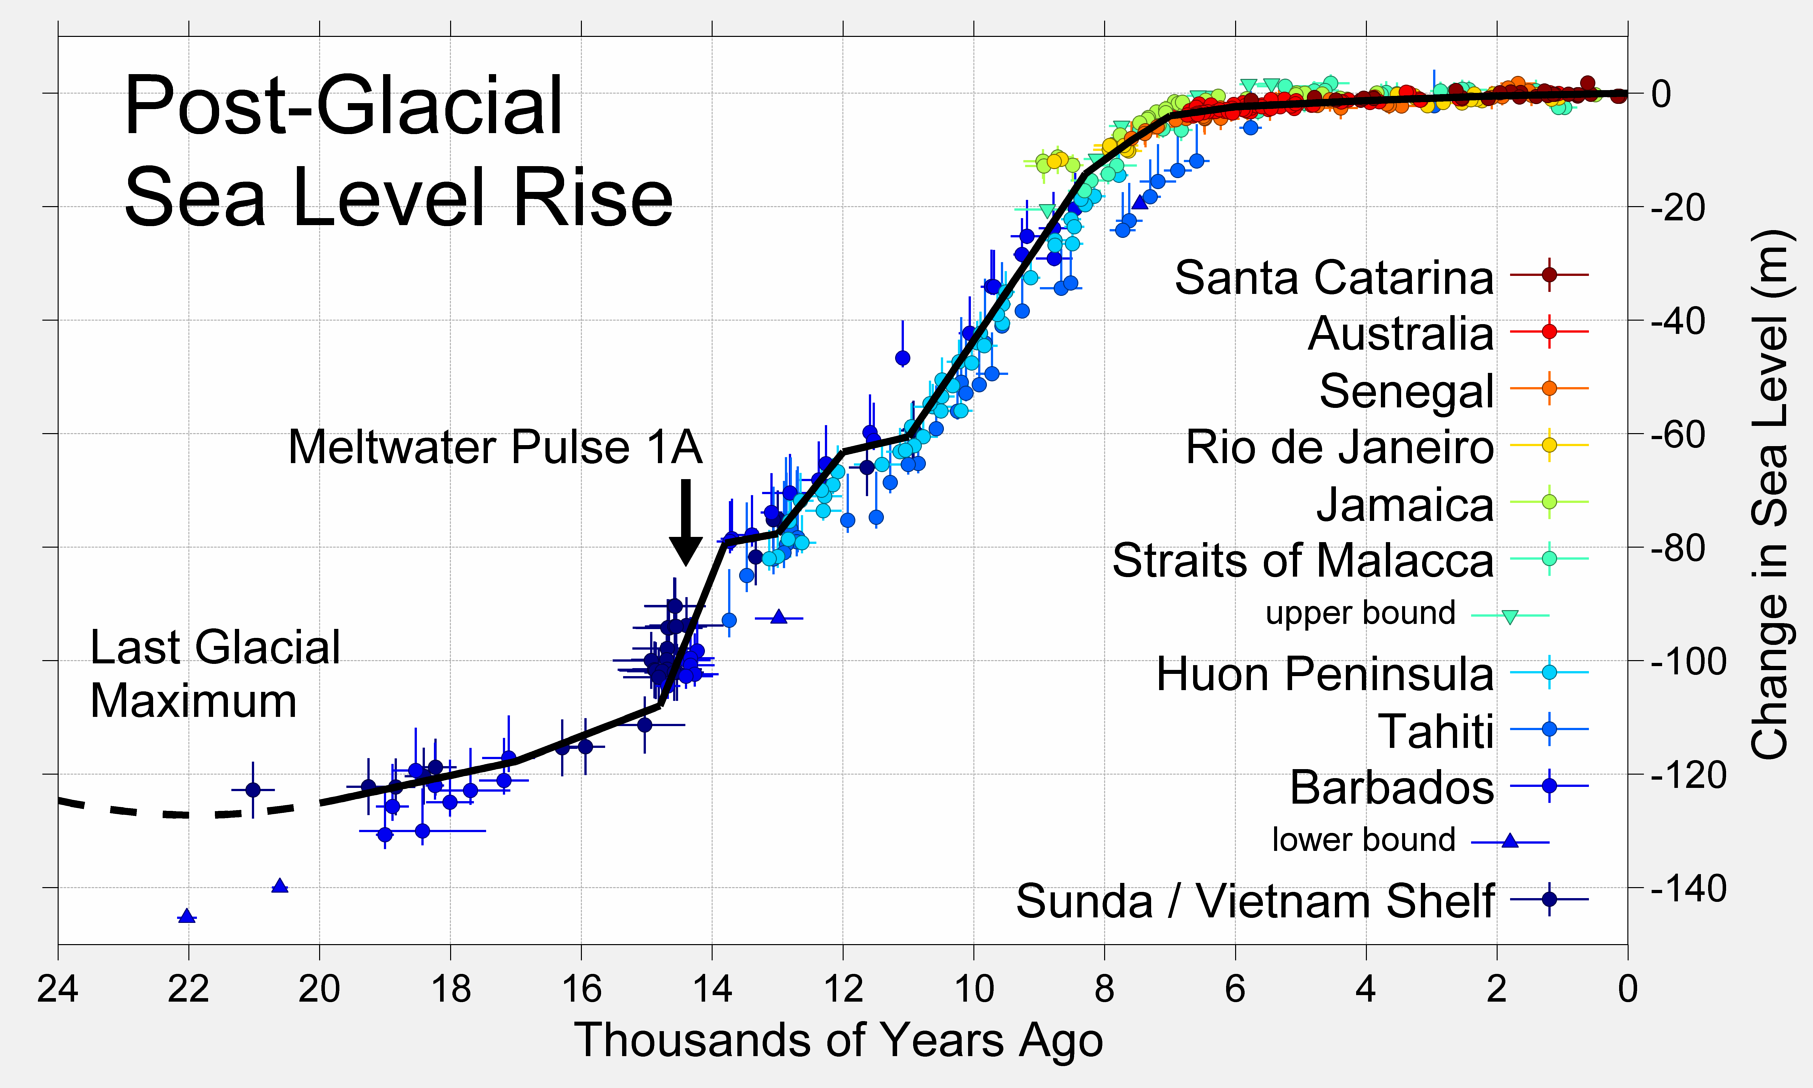 A tengerszint növekedése az utolsó jégkorszaki maximumot követően. Jól látható, hogy az emelkedés az utóbbi 6-7 ezer évben az ipari forradalomig nagyrészt stabilizálódott.